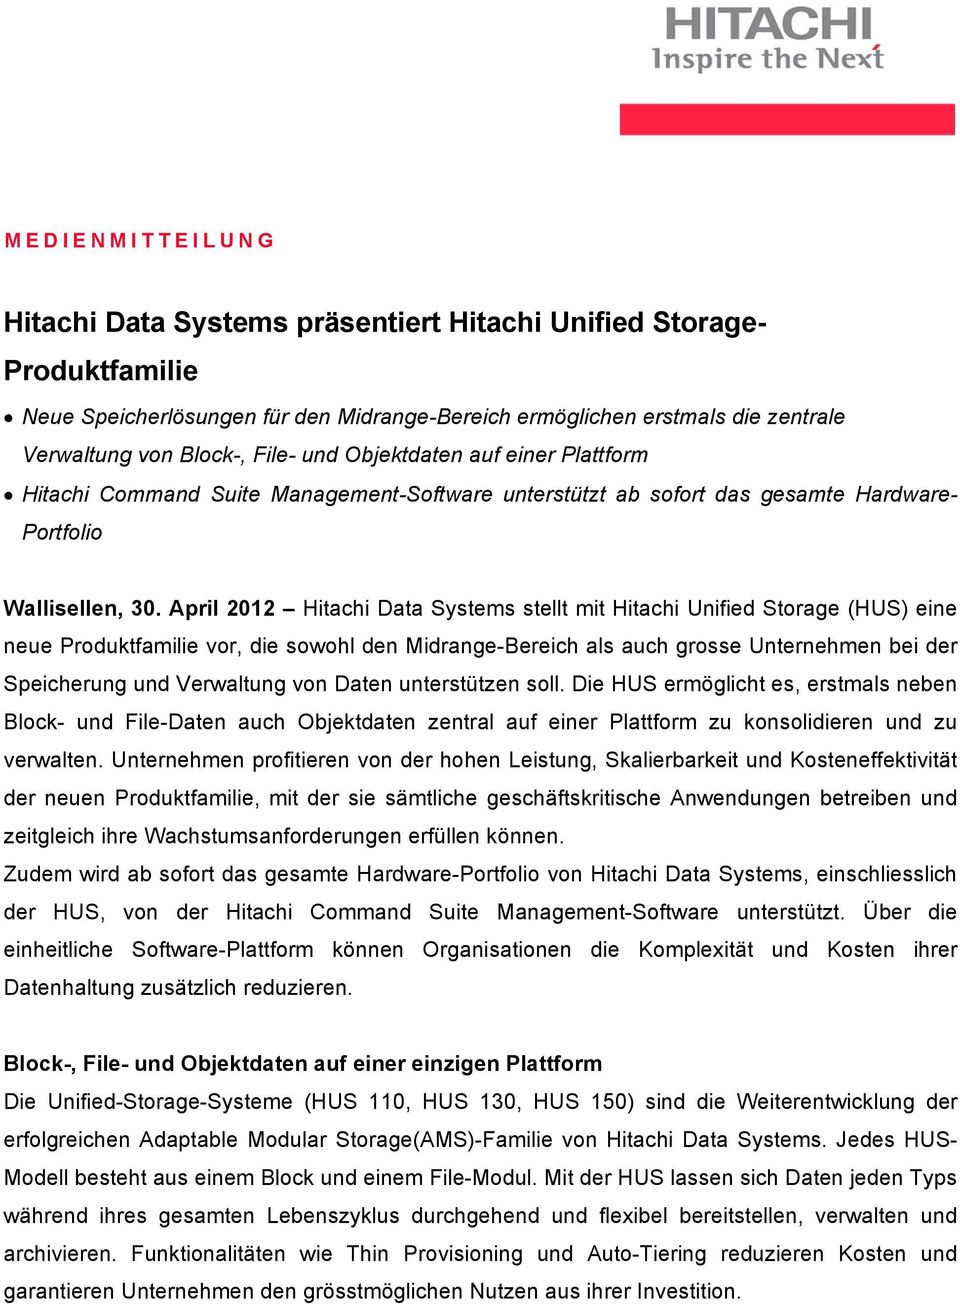 April 2012 Hitachi Data Systems stellt mit Hitachi Unified Storage (HUS) eine neue Produktfamilie vor, die sowohl den Midrange-Bereich als auch grosse Unternehmen bei der Speicherung und Verwaltung